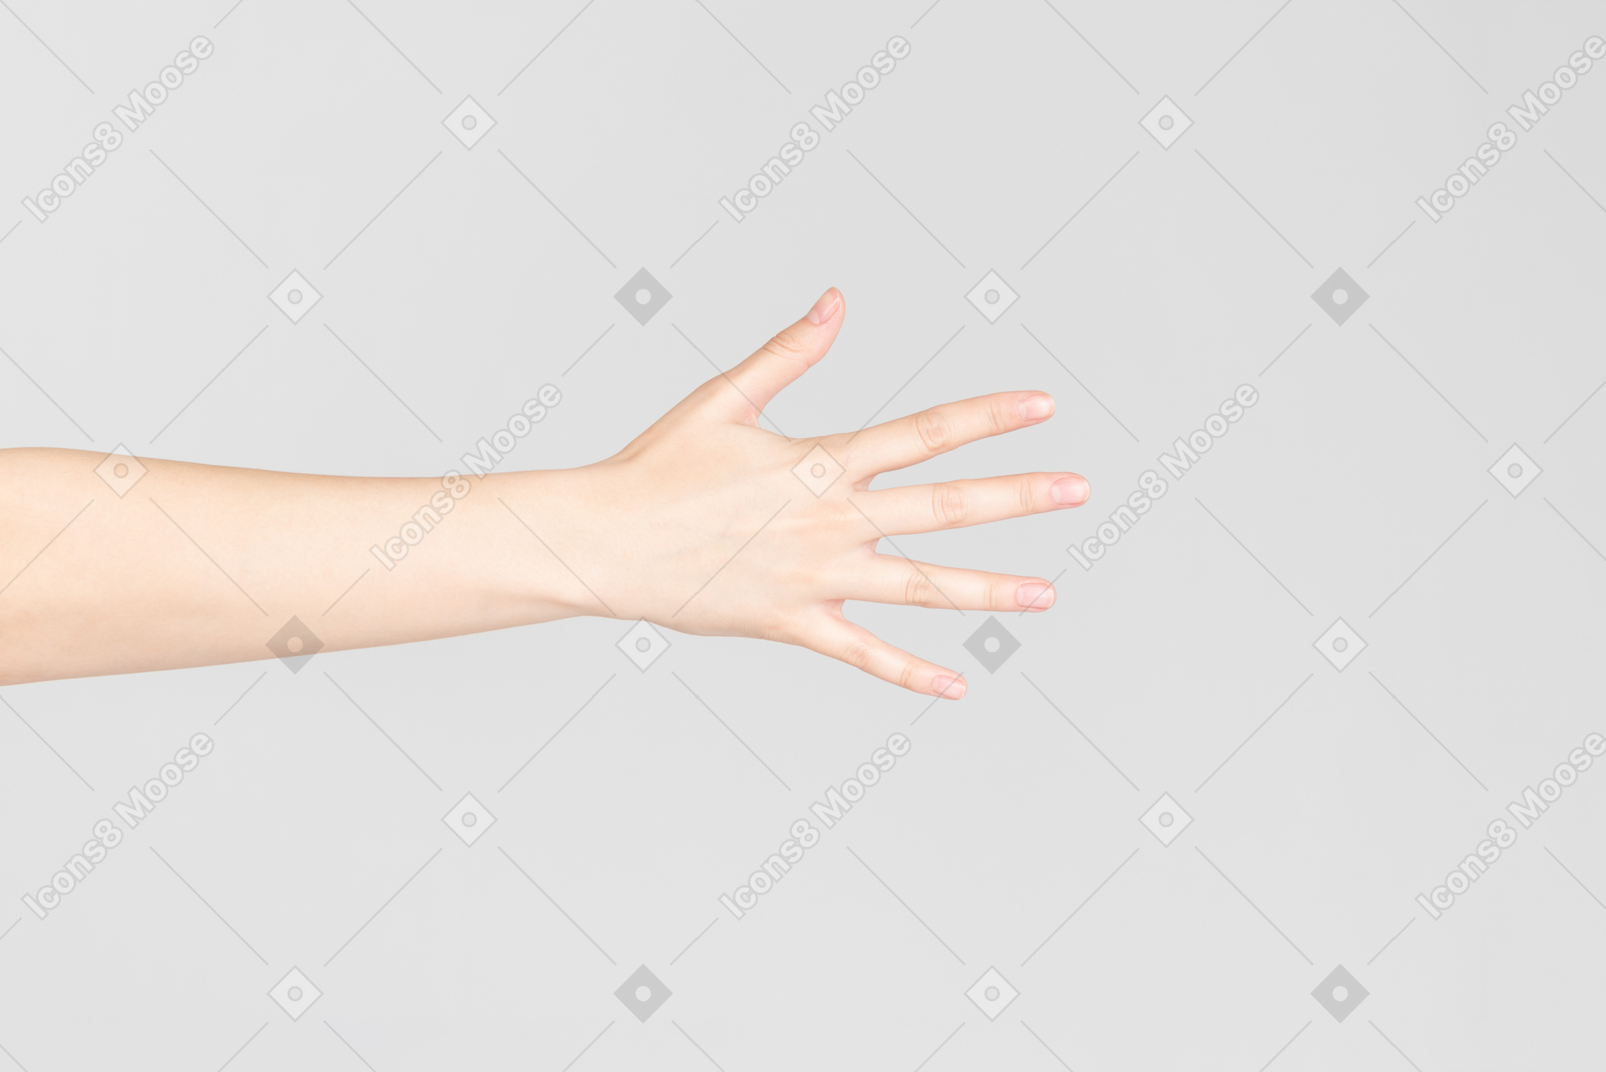 Regard de côté de la main de la femme avec les doigts ouverts